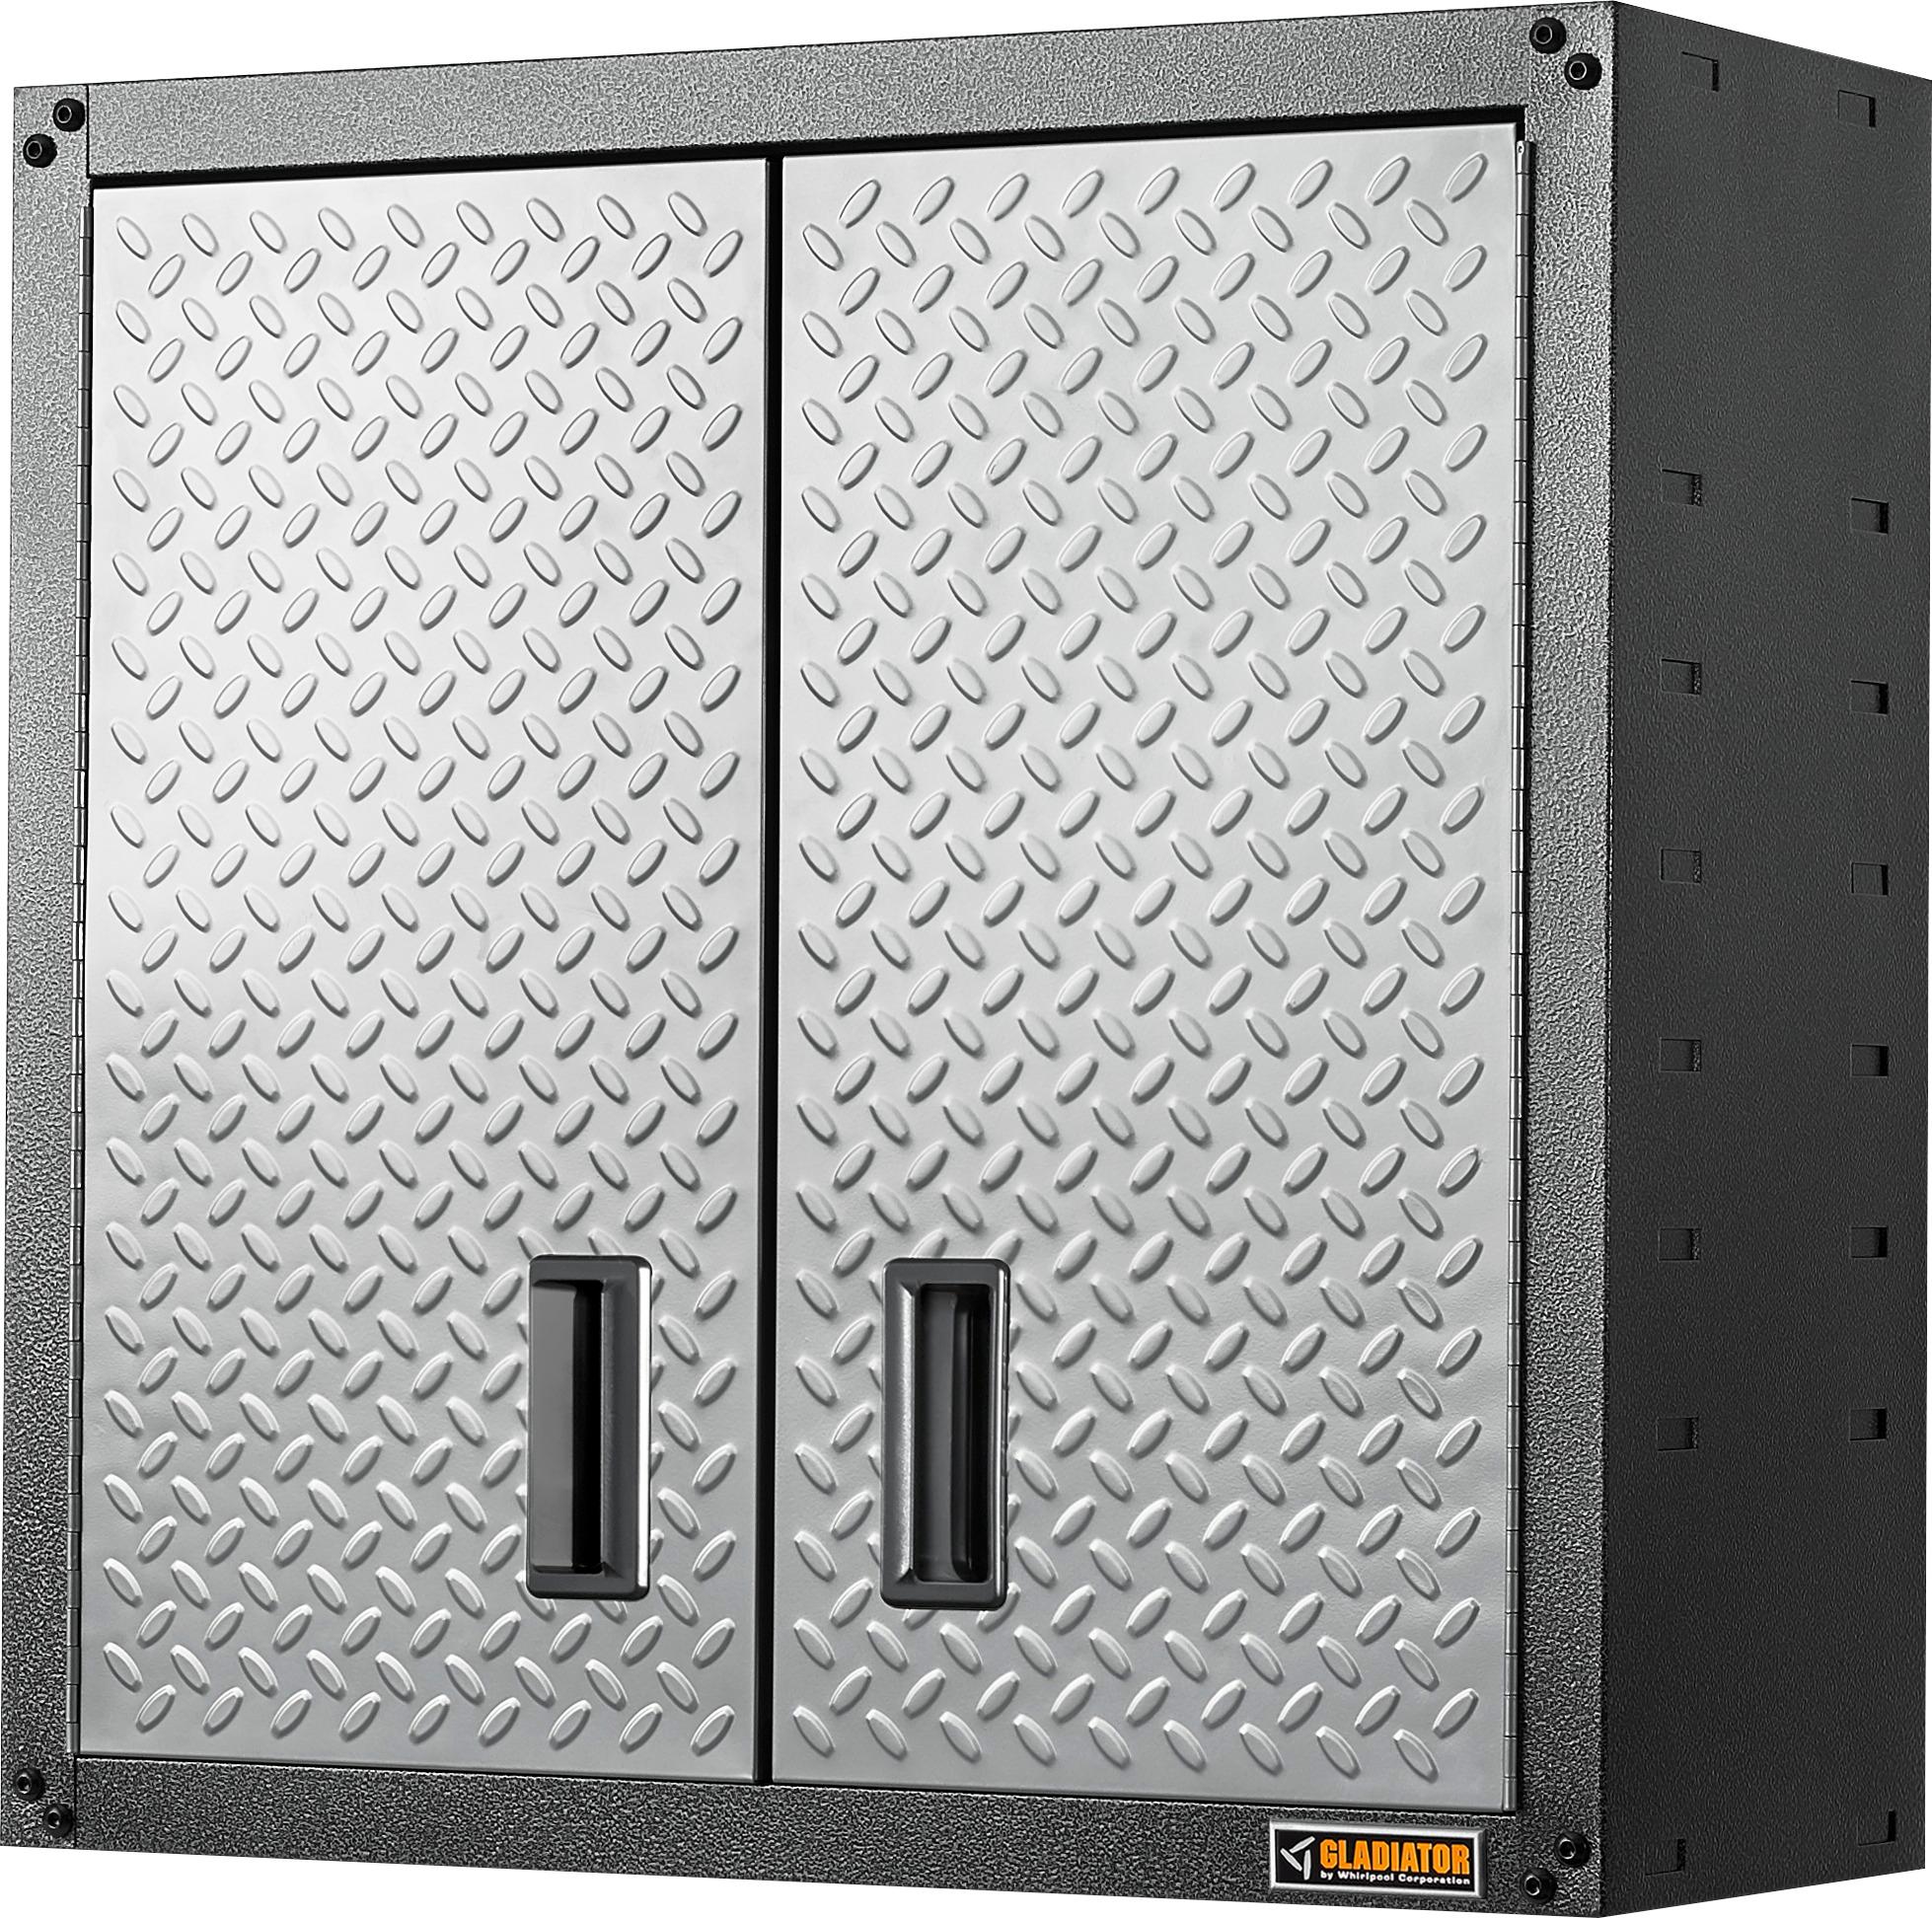 Gladiator 36 Stainless Steel Double Door Floor Gearbox